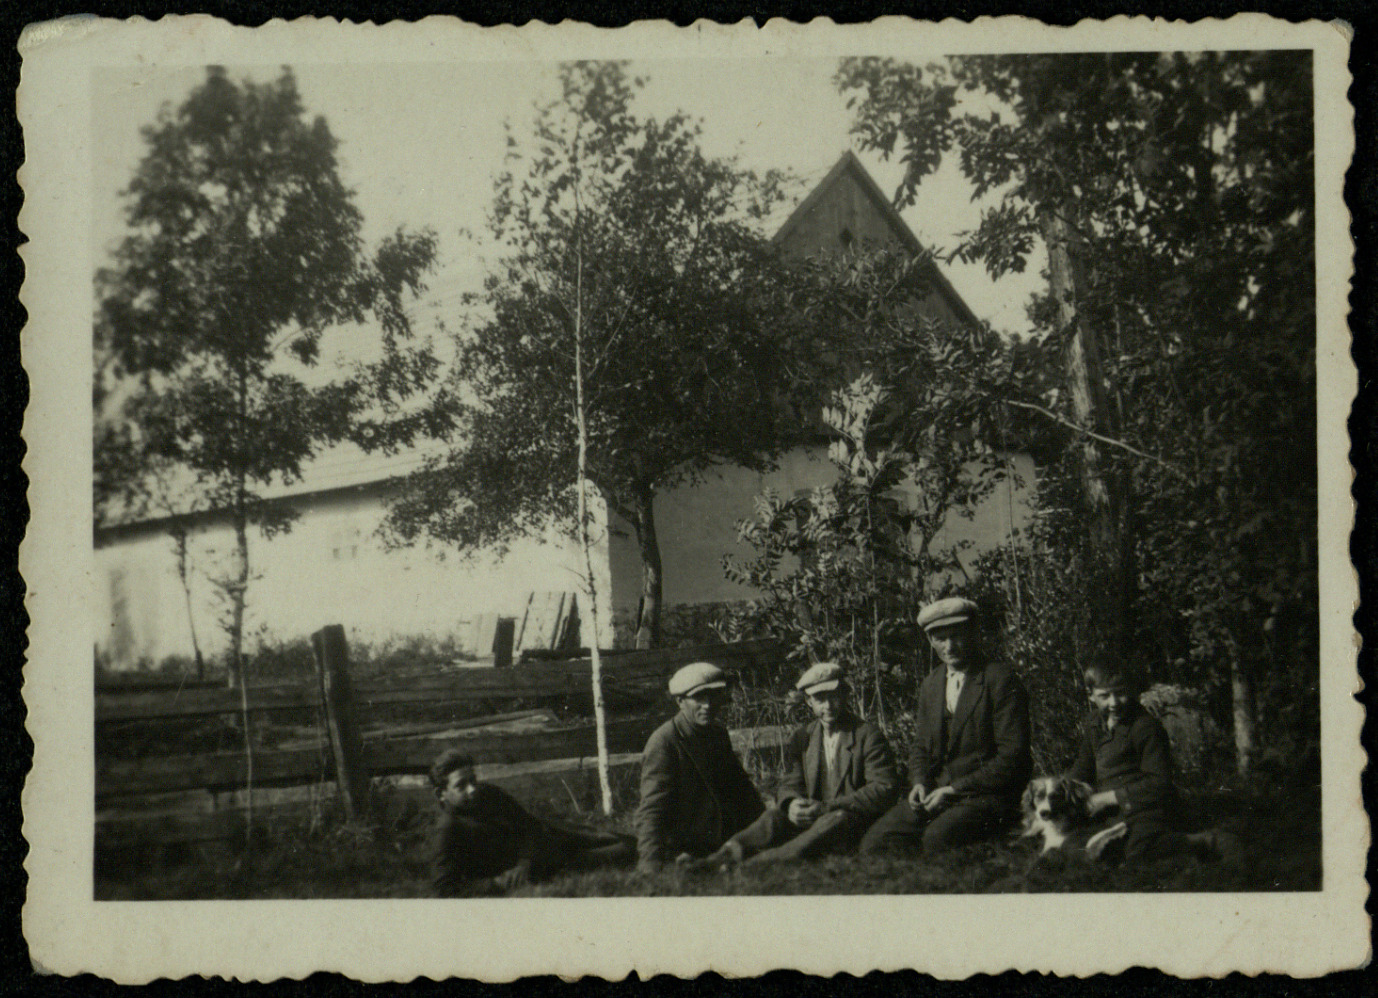 Girpetrių kaimynai sekmadienio saulėje. Apie 1933–1934 m. 